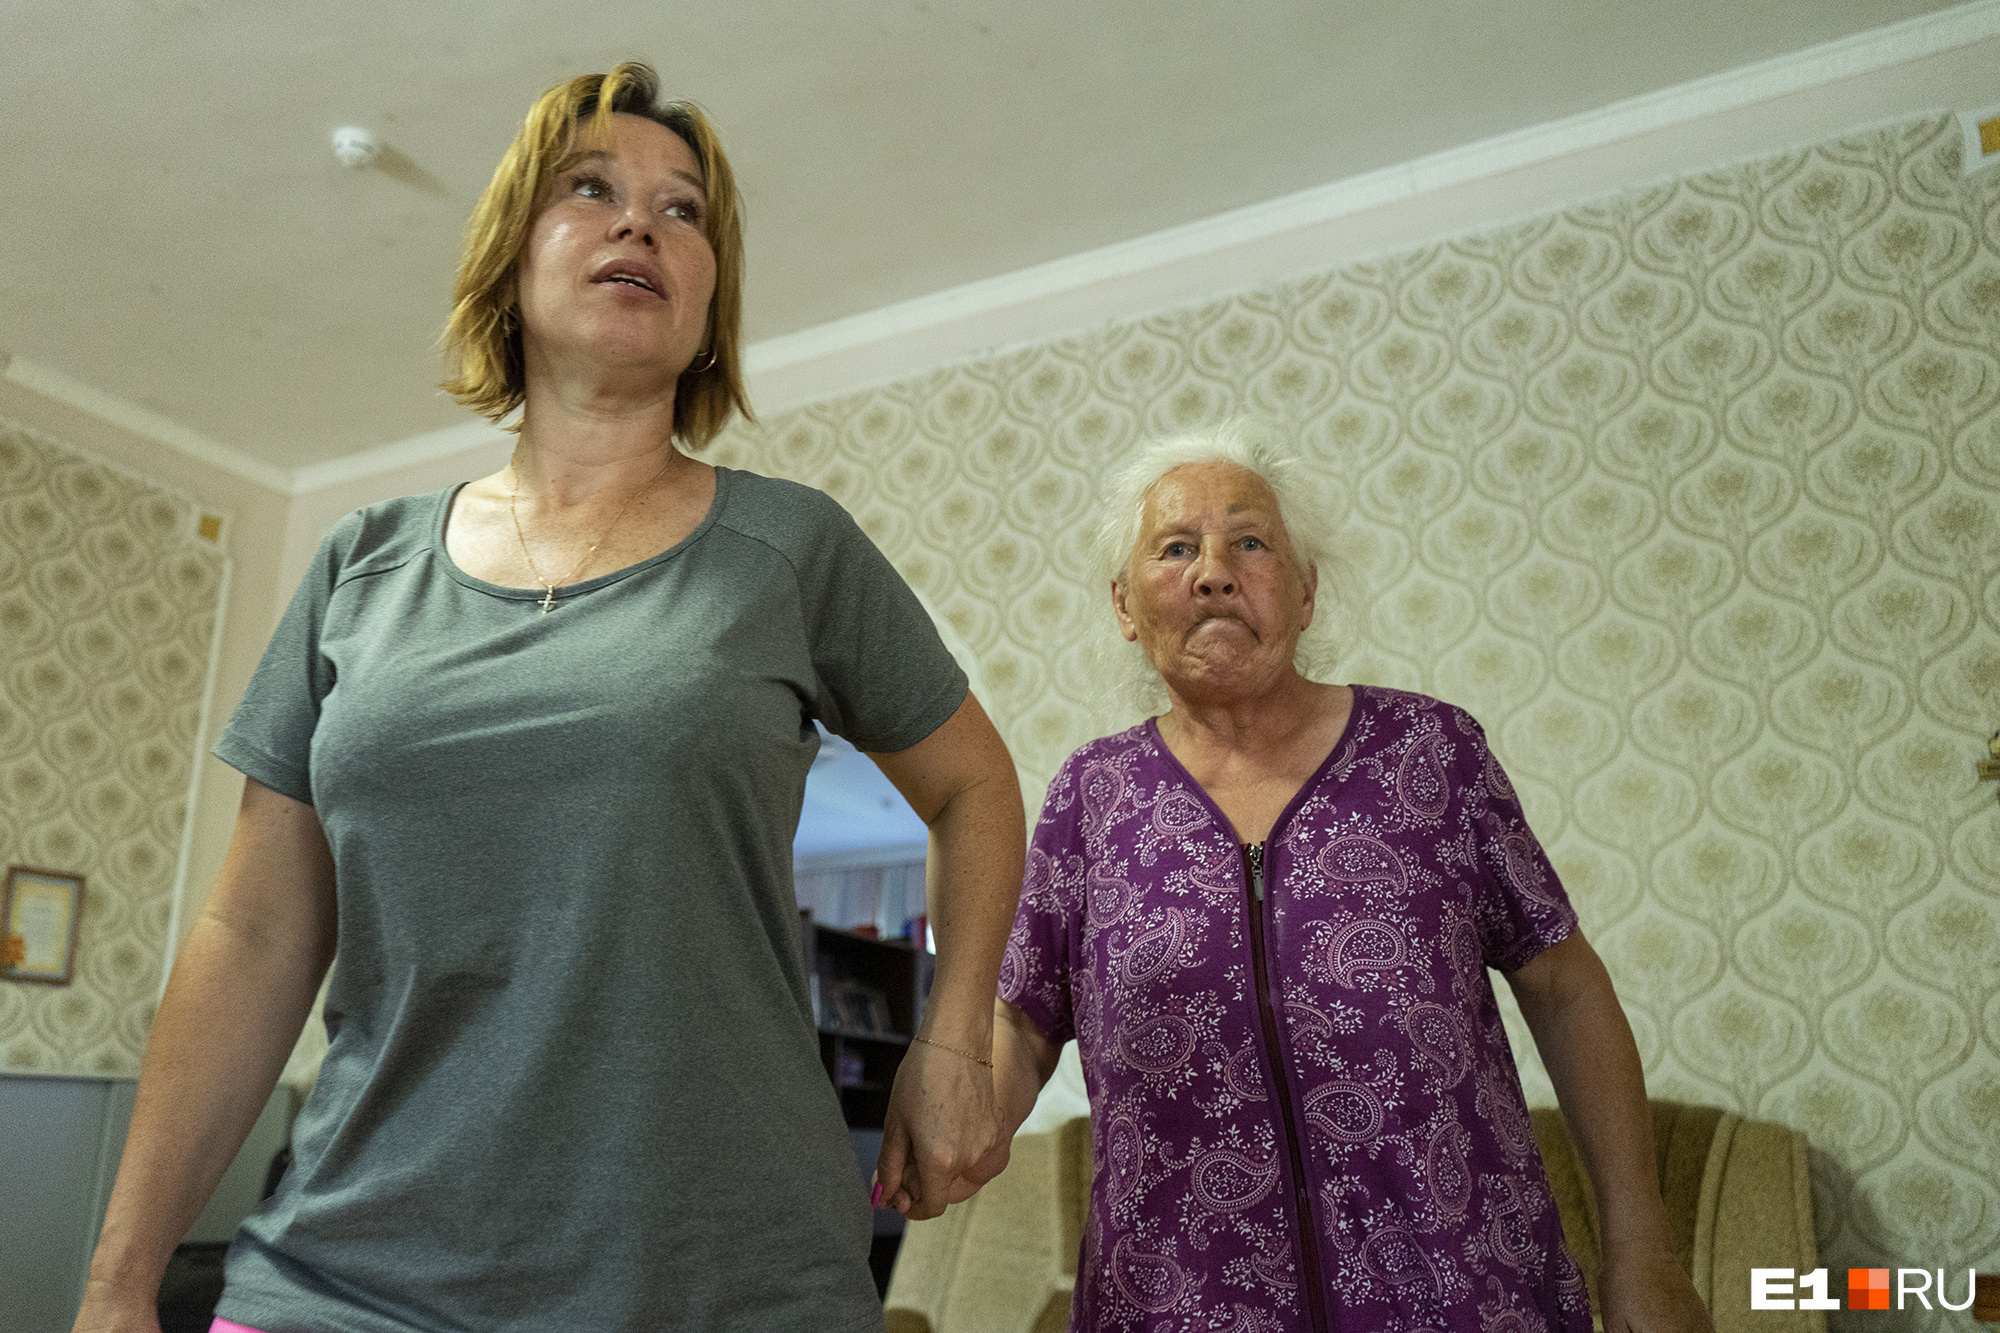 Ольга Бахтина, директор дома престарелых: «Возможно, взяли Рашиду из благих намерений...»